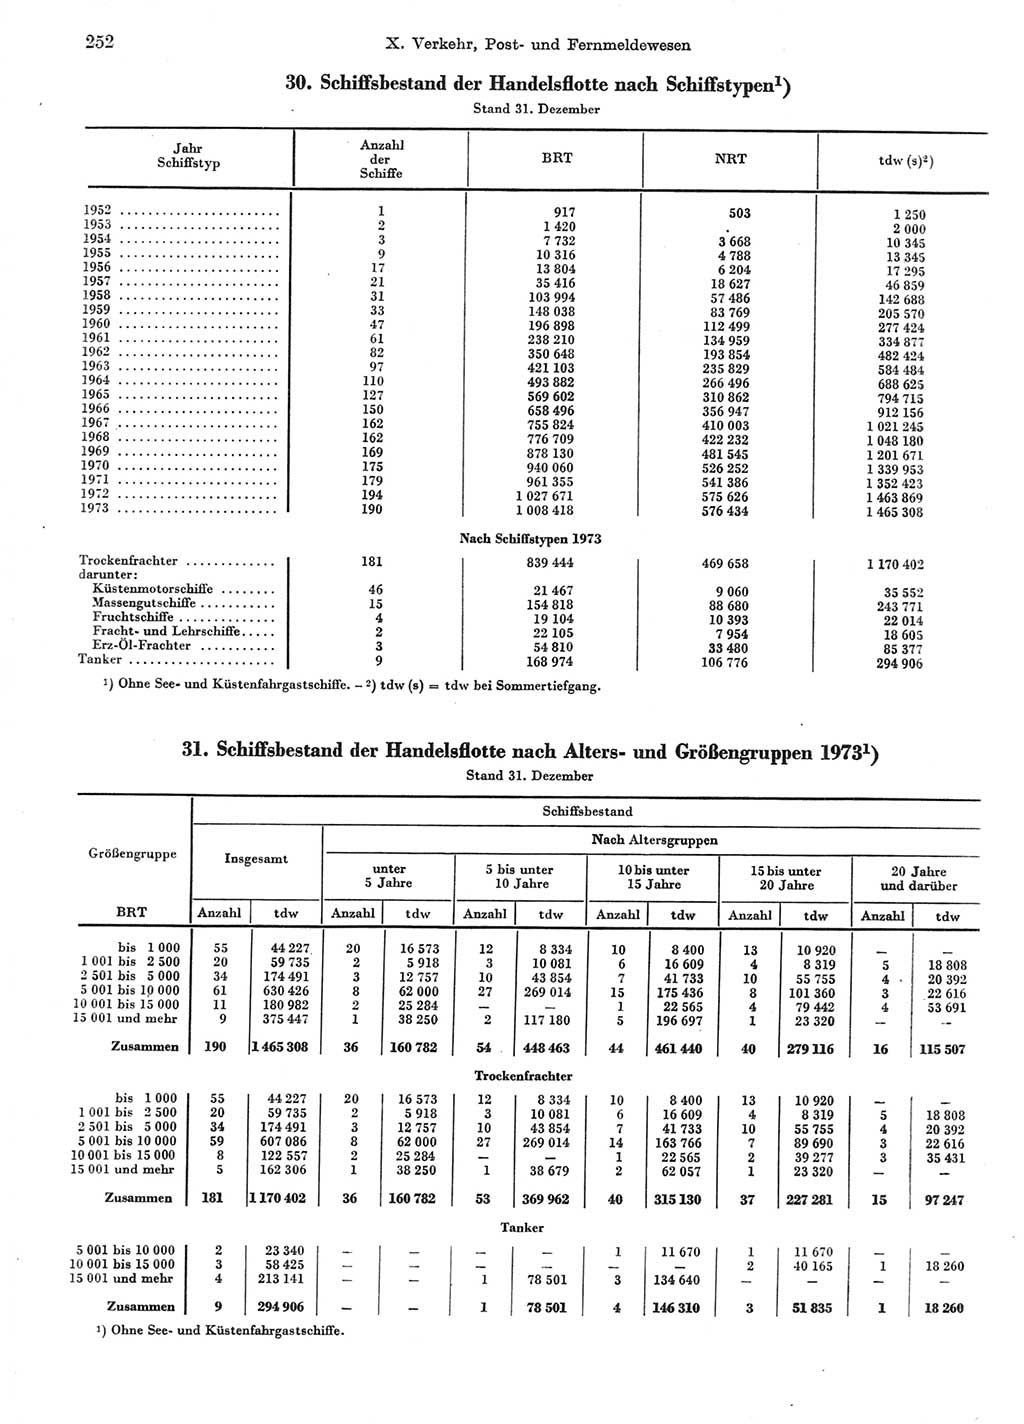 Statistisches Jahrbuch der Deutschen Demokratischen Republik (DDR) 1974, Seite 252 (Stat. Jb. DDR 1974, S. 252)